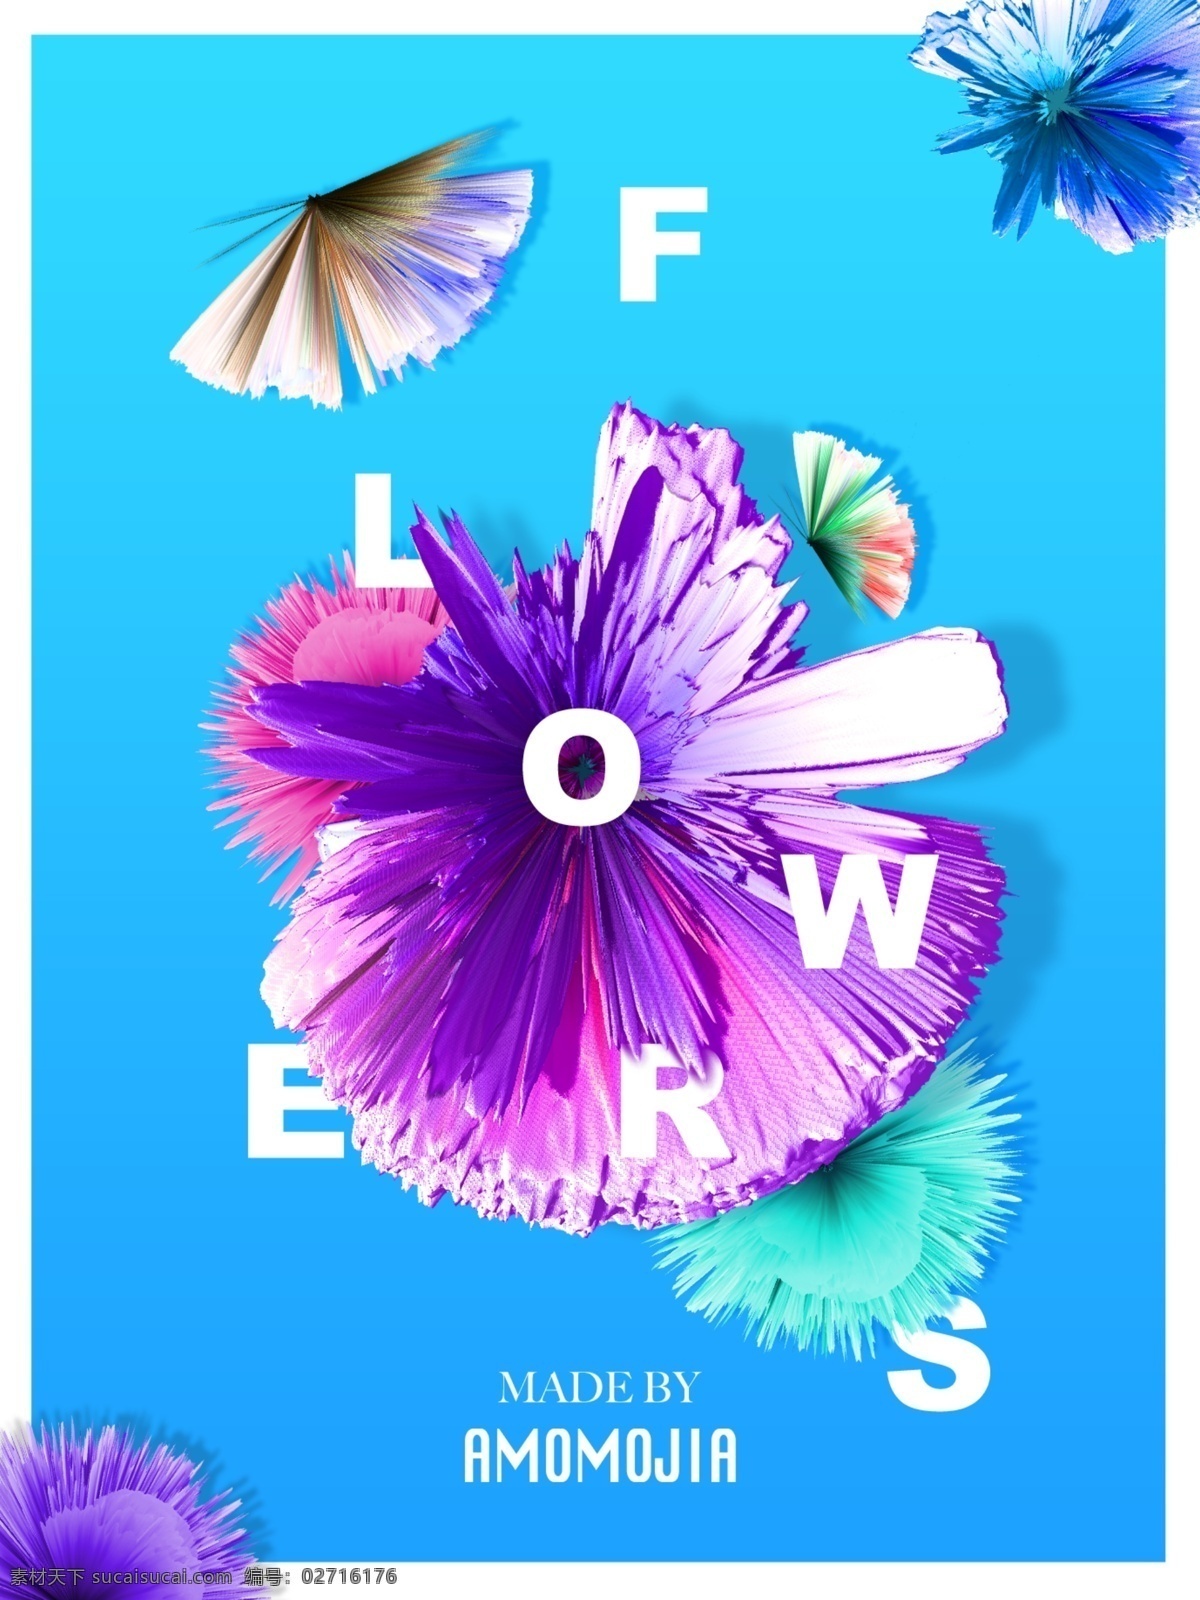 炫 酷 时尚 宣传海报 展板 3d 彩色 蓝色 炫酷 异形 花 设计元素 flowers 海报